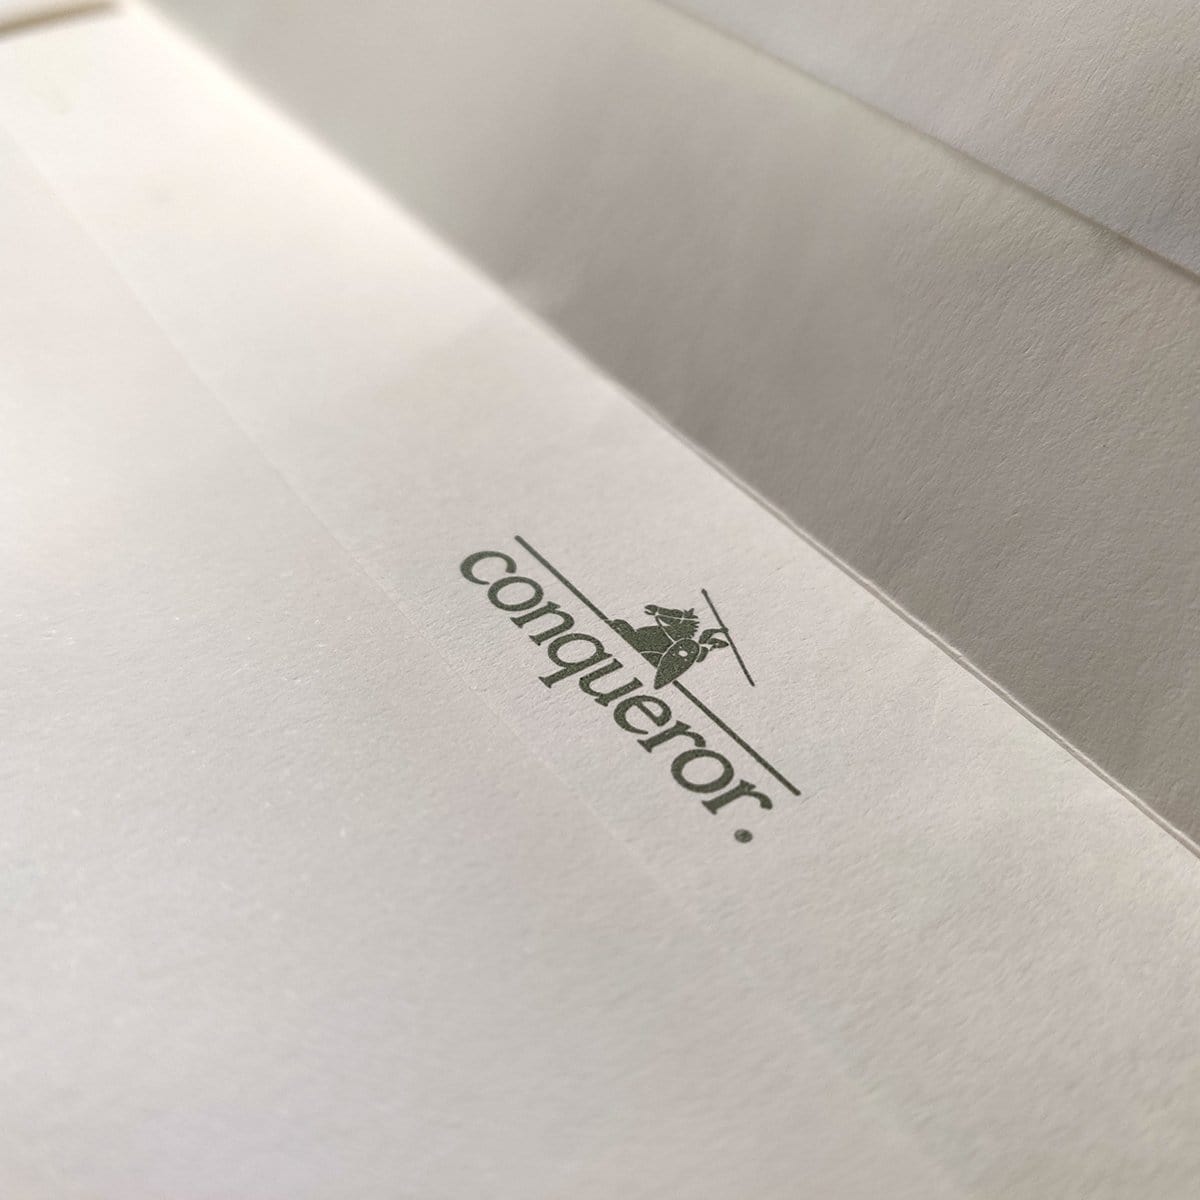 C4 Conqueror Brilliant White 120gsm Laid Peel & Seal Pocket Envelopes [Qty 250] 324 x 229mm - All Colour Envelopes